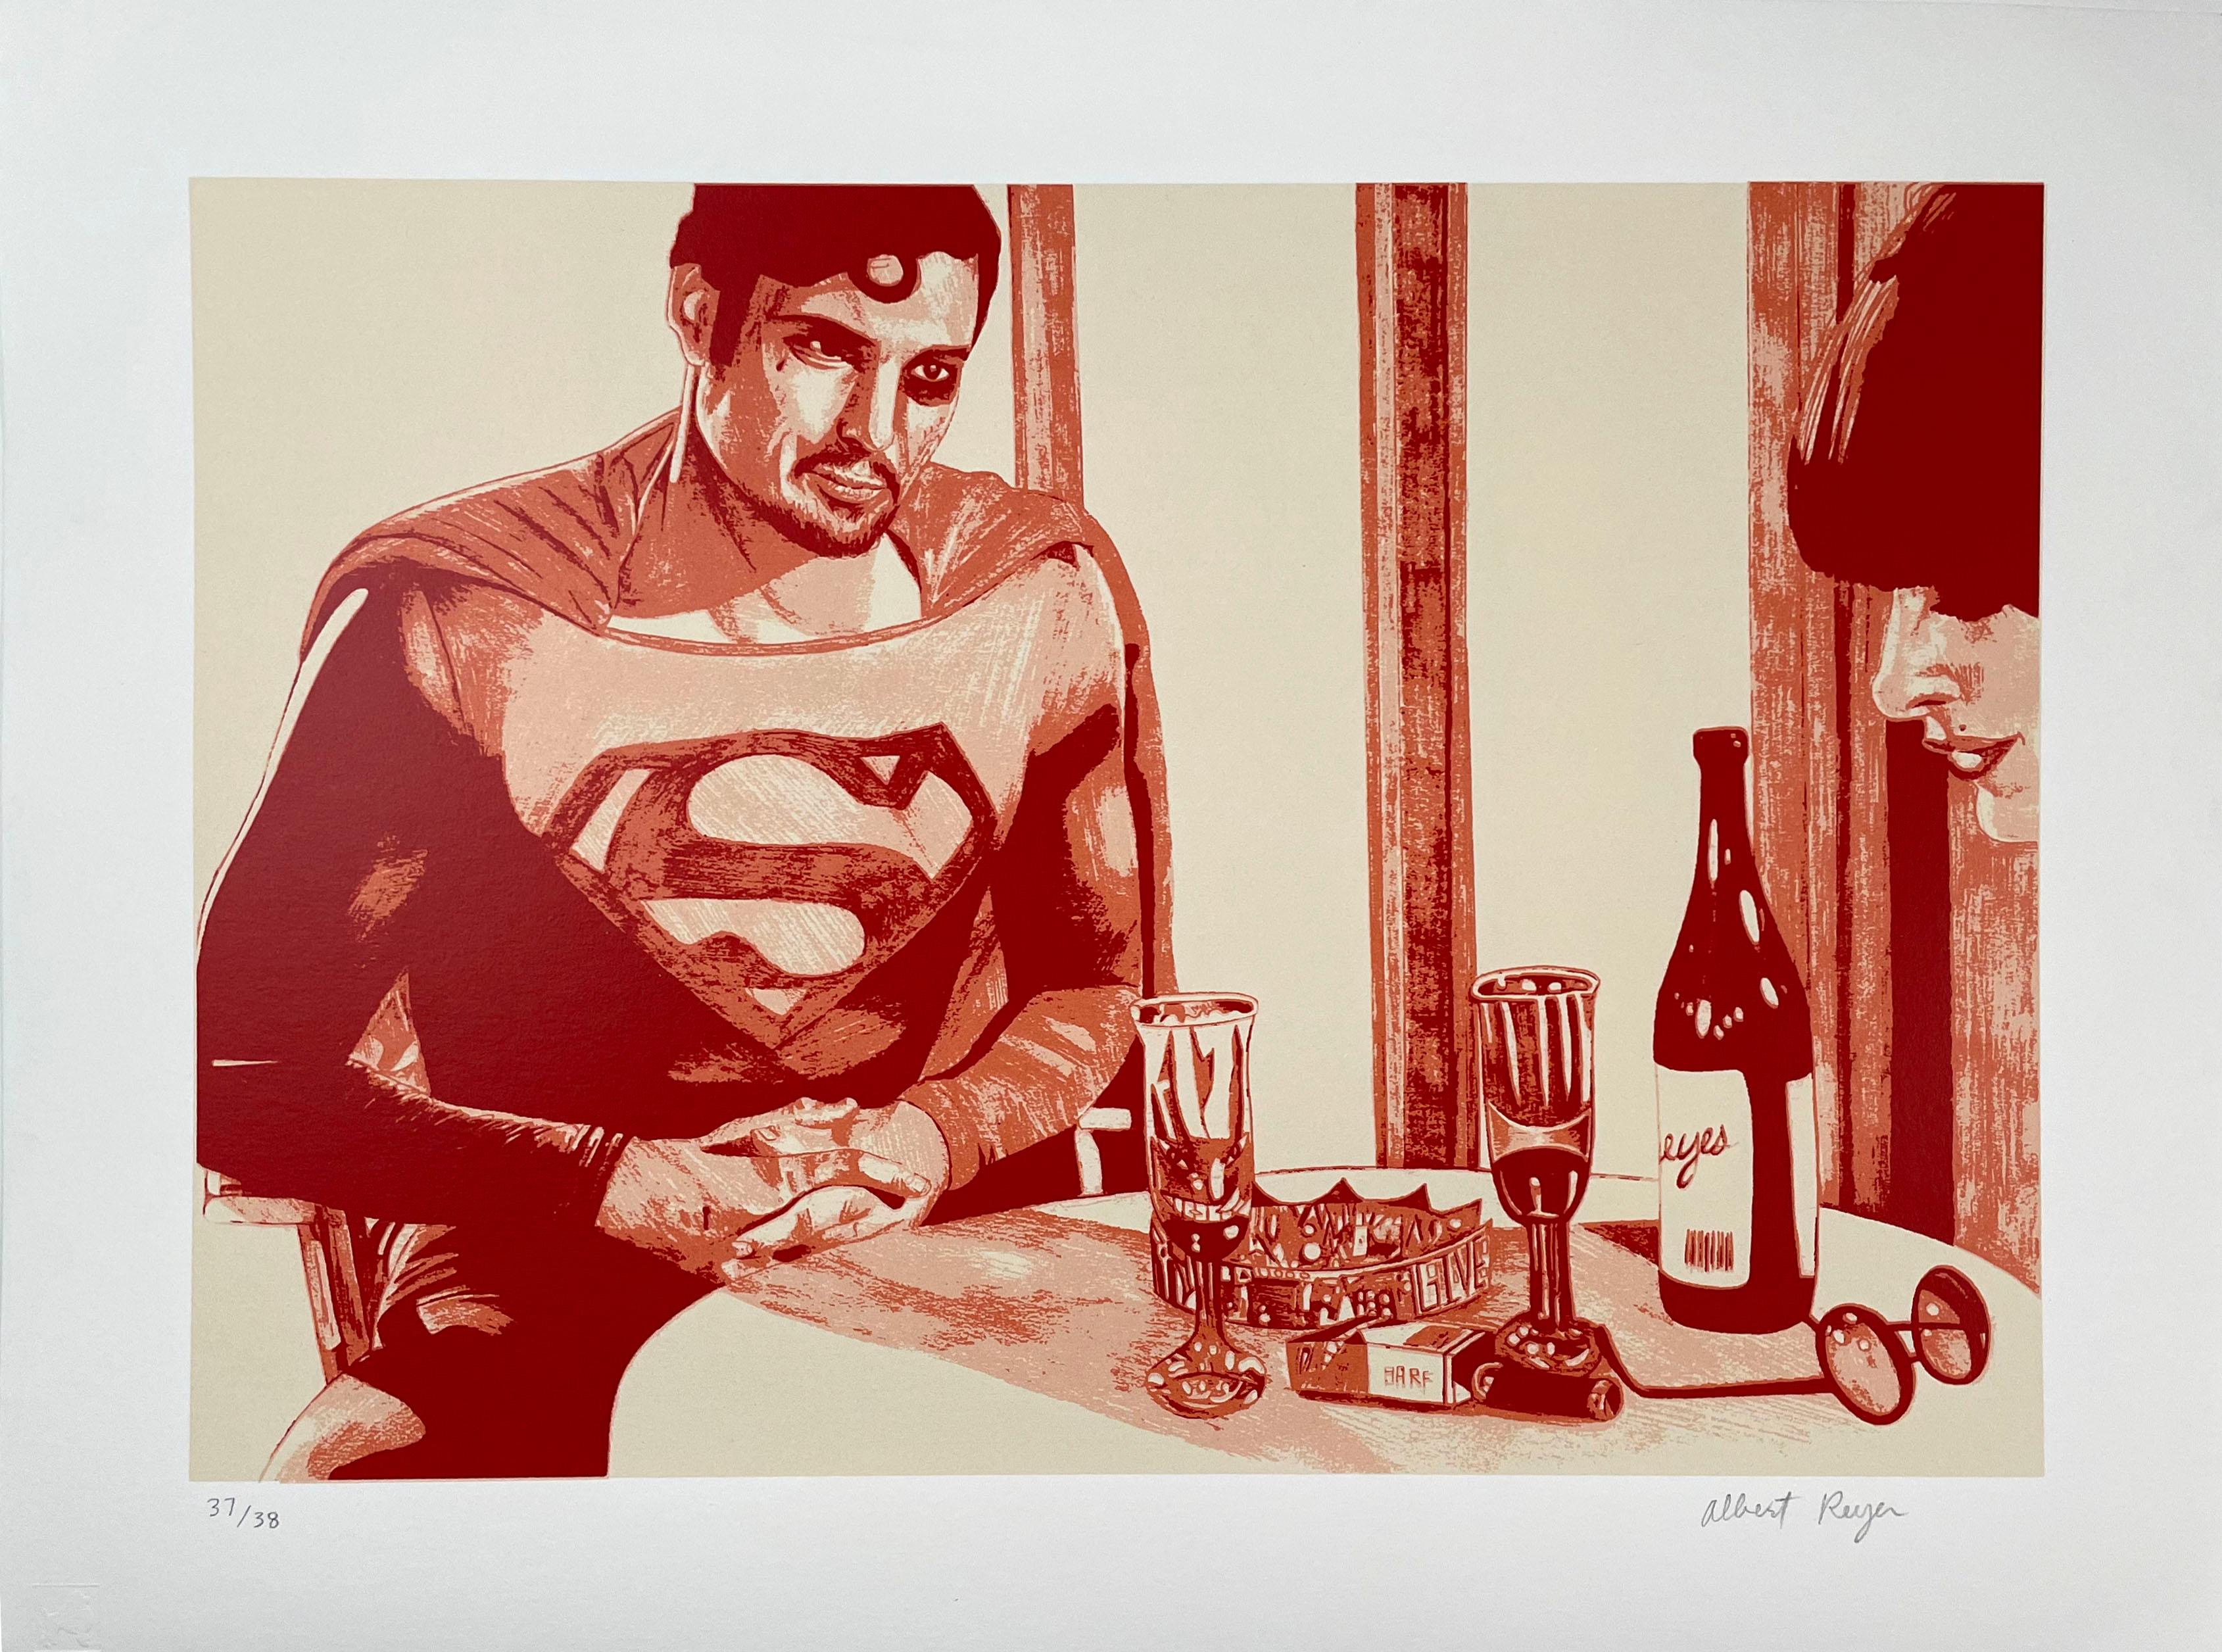 Superman - Print by albert reyes